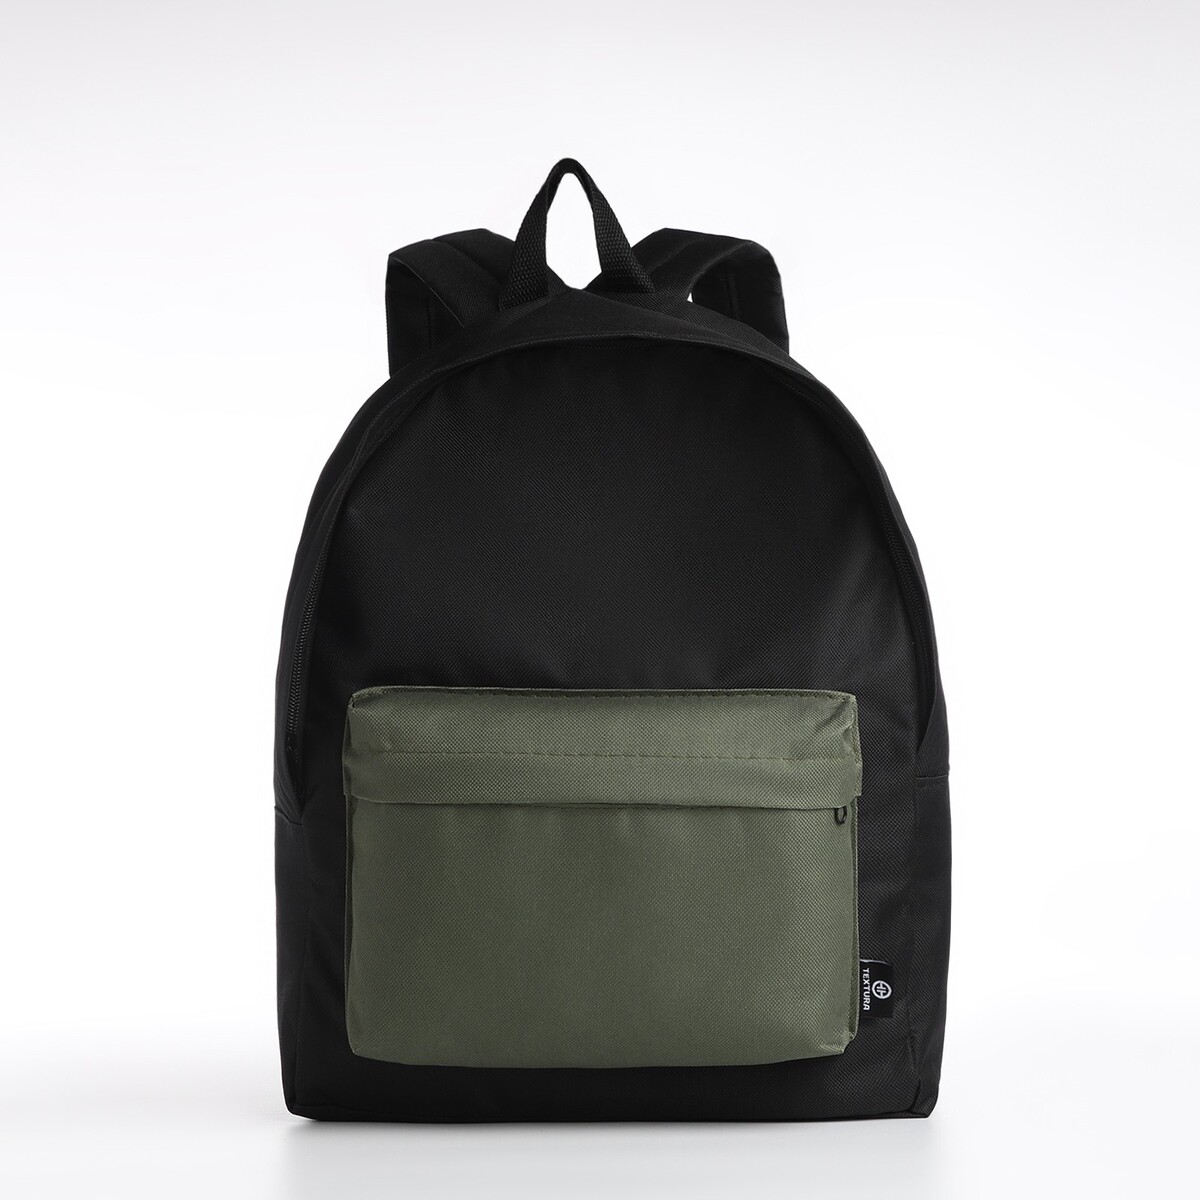 Спортивный рюкзак, textura, 20 литров, цвет черный/хаки